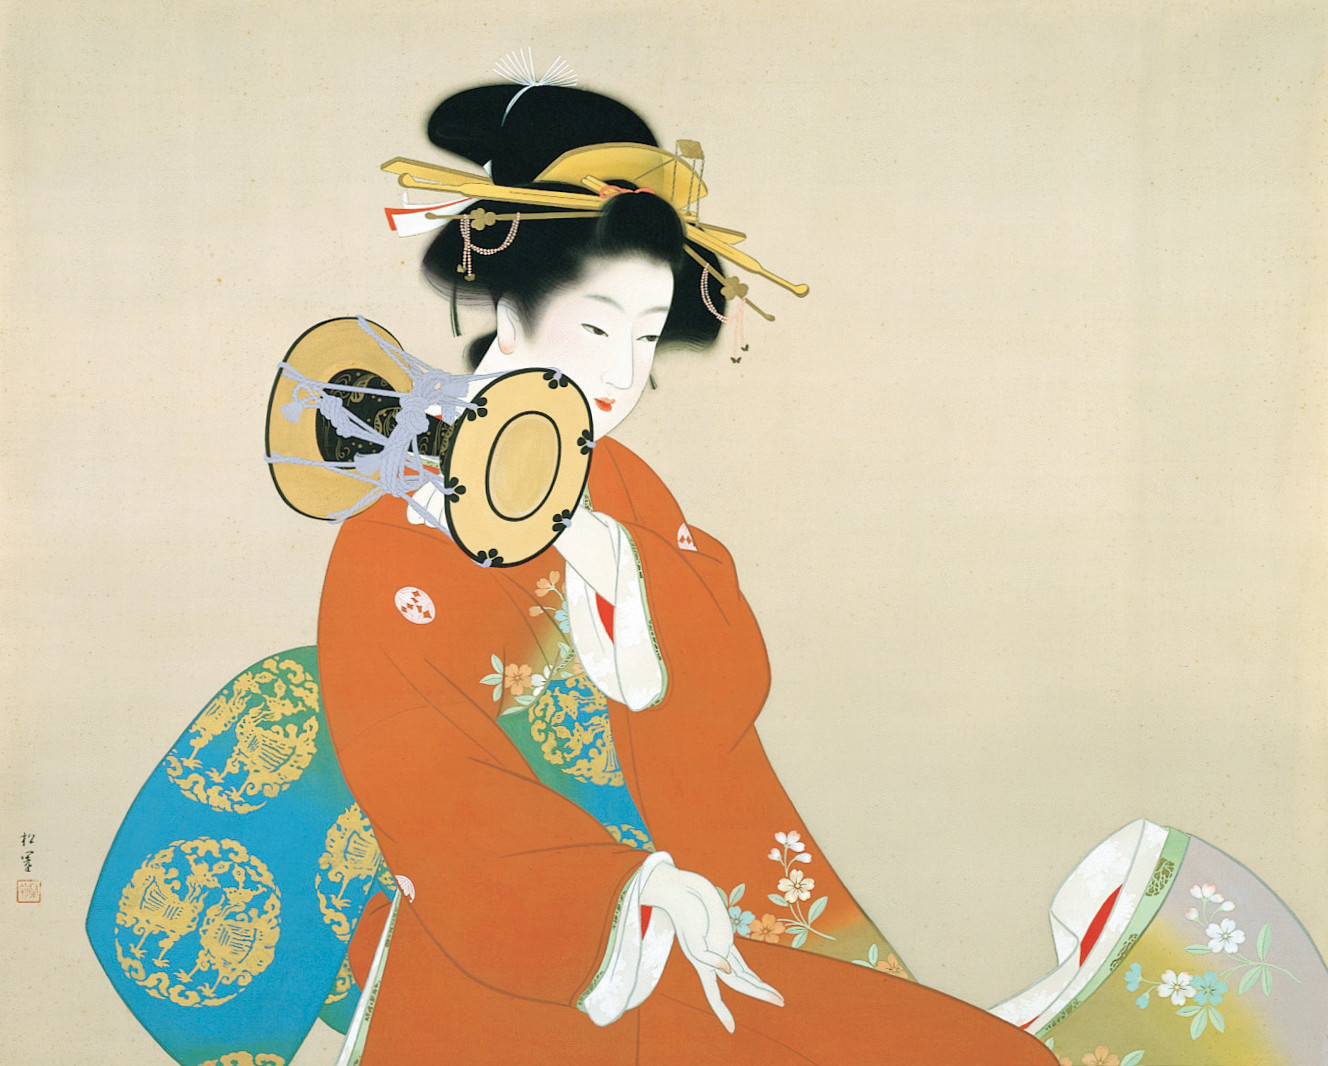 東西美人画の名作 序の舞 への系譜 が東京藝術大学大学美術館で開催 江戸時代の風俗画や浮世絵から 上村松園 序の舞 まで Spice エンタメ特化型情報メディア スパイス